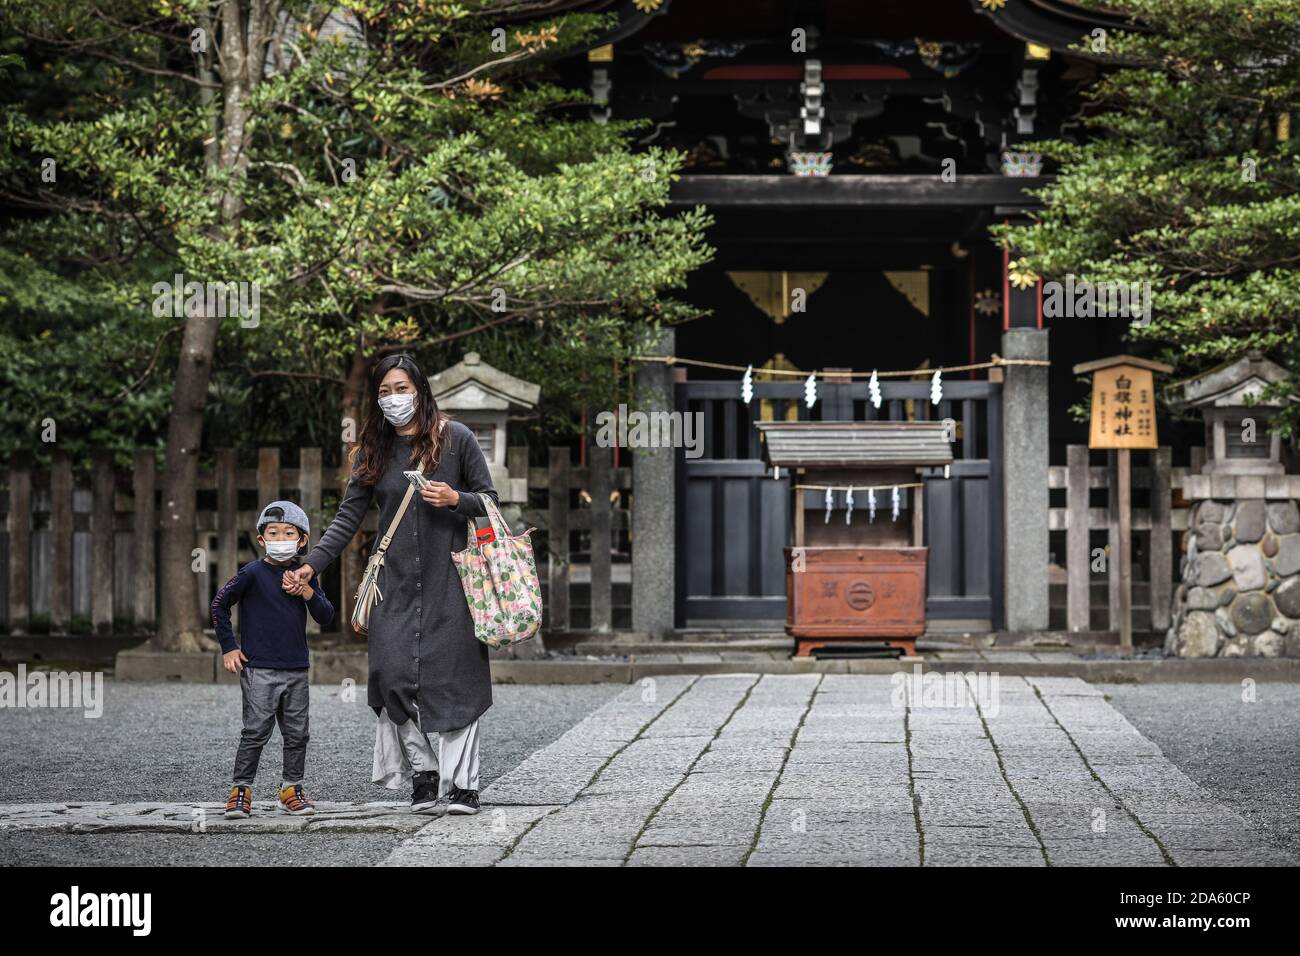 Kamakura, Japon. 6 novembre 2020. Mère et son fils portant un masque facial visitent le sanctuaire Tsurugaoka Hachimangu lors de l'événement Shichi Go San.Shichi Go san est un événement marquant qui célèbre la santé et le bien-être des enfants de trois, cinq et sept ans. Traditionnellement, les garçons et les filles de trois ans, les garçons de cinq ans et les filles de sept ans célèbrent cet événement, mais de nombreux parents aujourd'hui vont habiller tous leurs enfants en kimono en même temps, quel que soit leur âge pour obtenir des photos de famille. Les enfants s'habillez dans un kimono, prenez des photos et visitez le sanctuaire shinto Banque D'Images